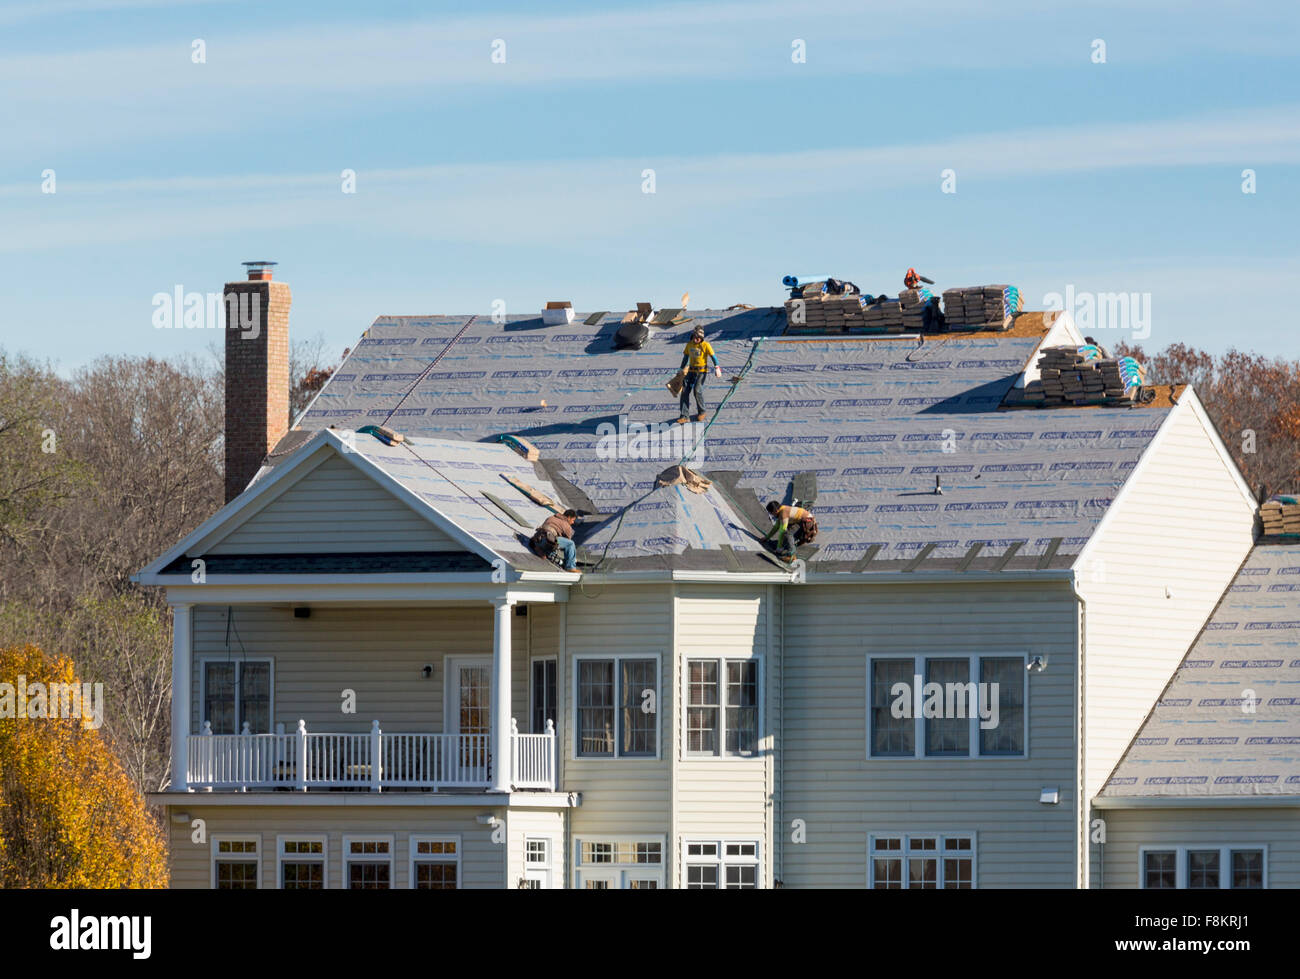 Des ouvriers sur toit d'une maison américaine remplaçant roofing se sentait prêt à remplacer des tuiles sur le toit, USA Banque D'Images